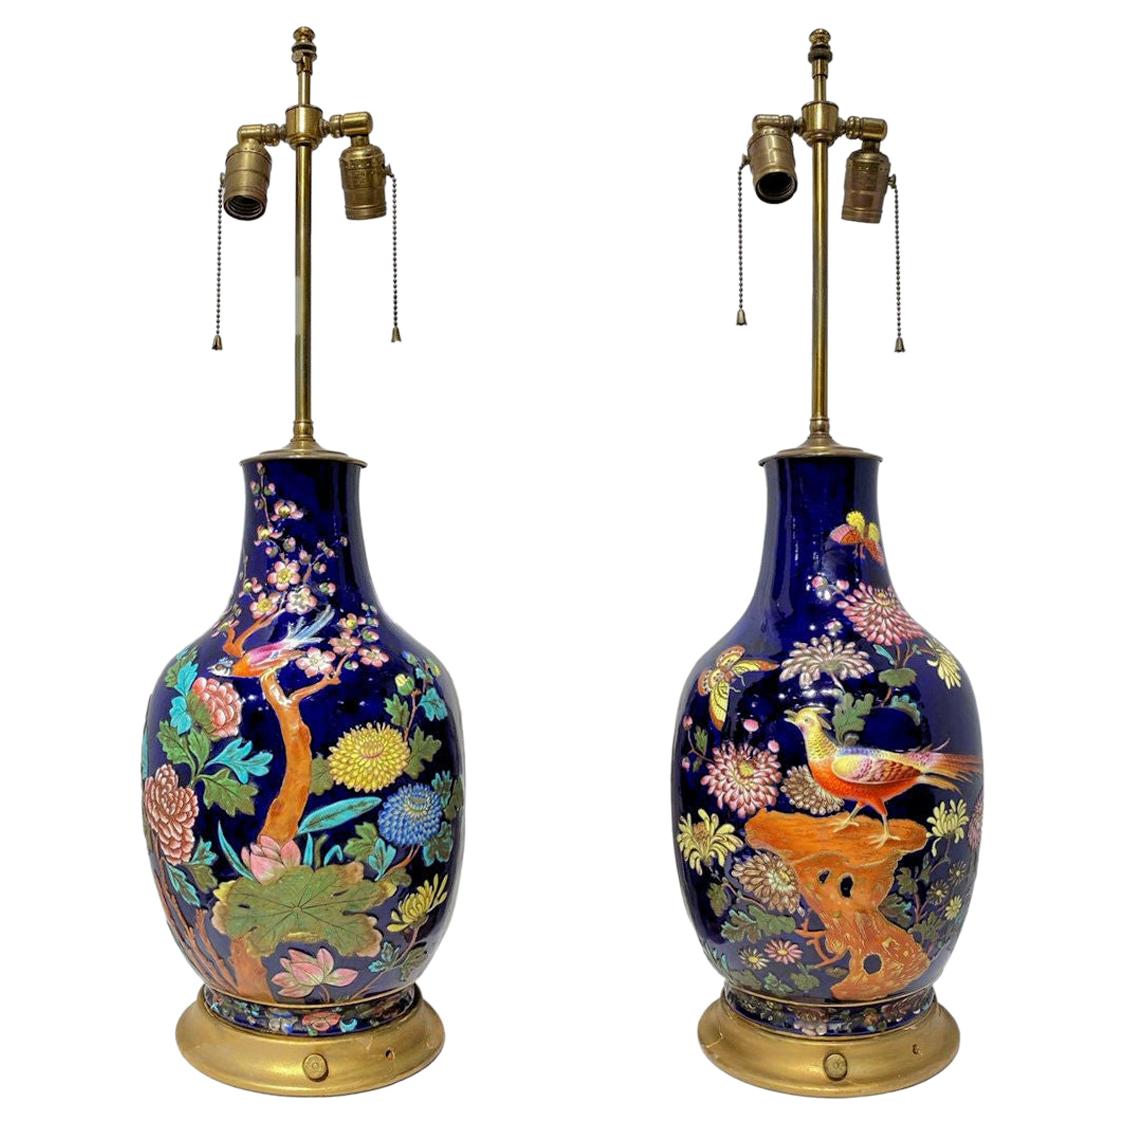 Paar bunte emaillierte Porzellan-Tischlampen mit Vogel- und Blumenmotiven